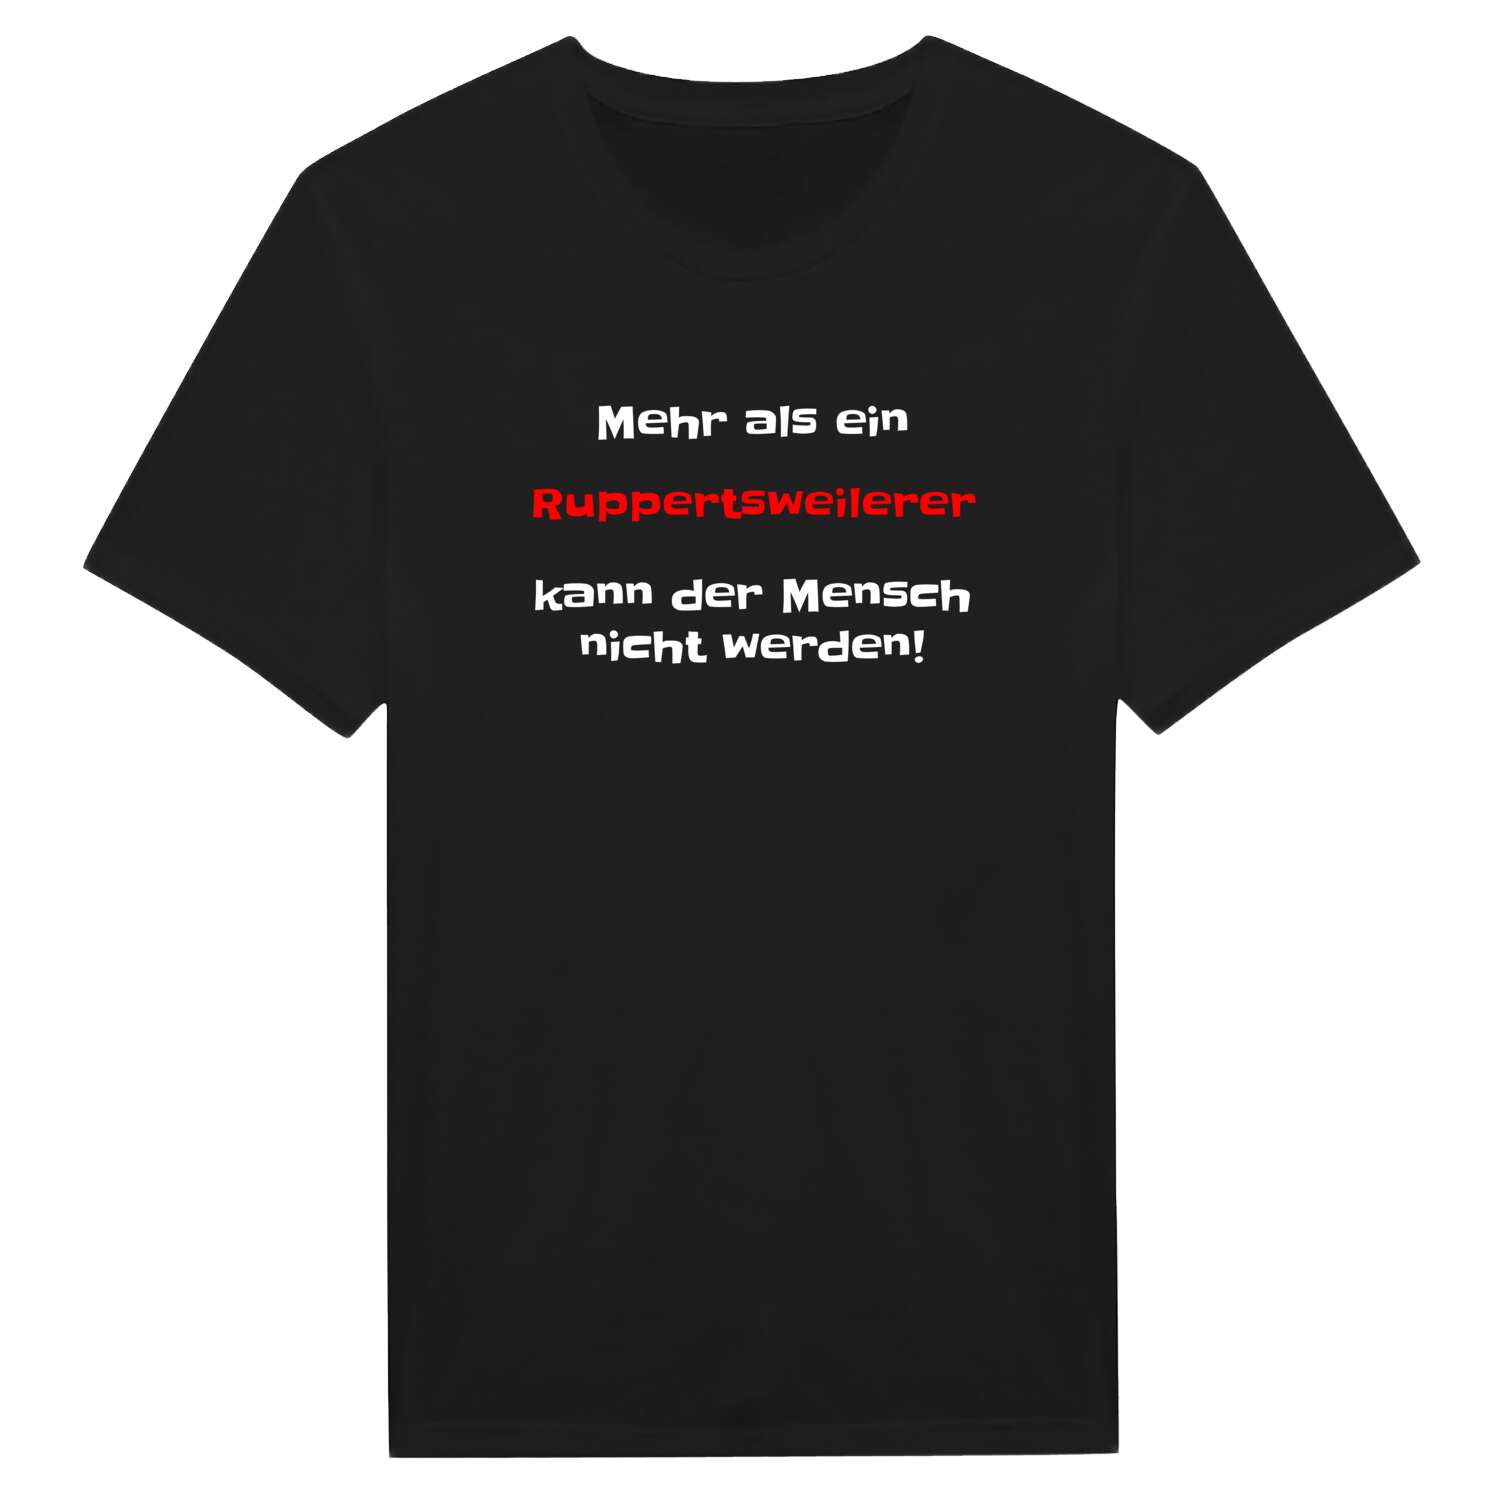 Ruppertsweiler T-Shirt »Mehr als ein«